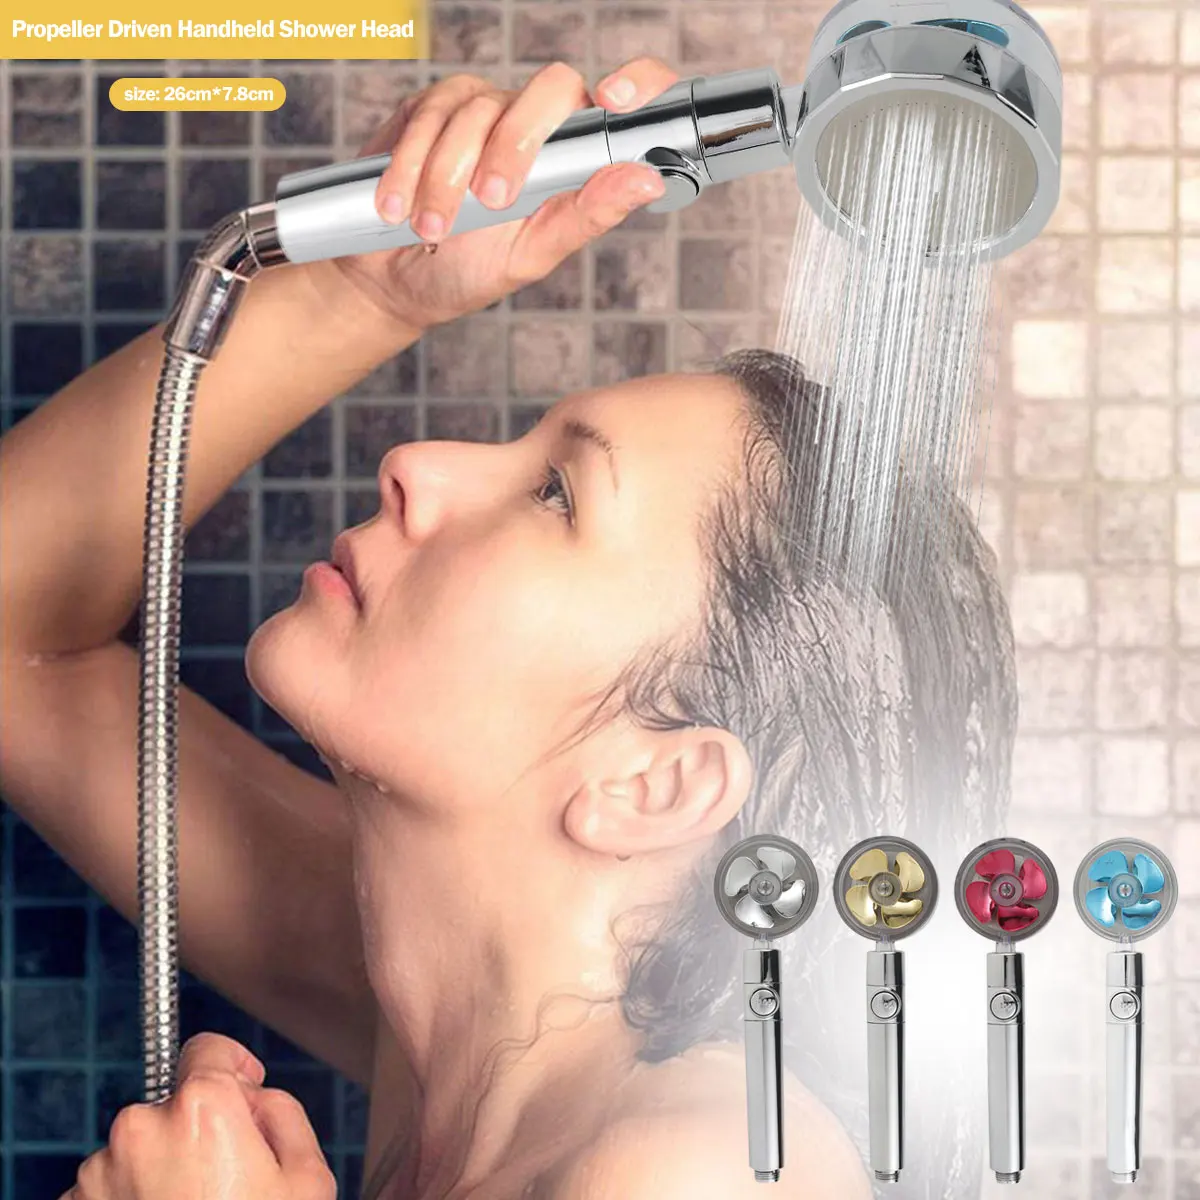 

Новая насадка для душа для ванной комнаты с турбовентилятором и пропеллером ручной душ с вращением на 360 градусов и экономией воды